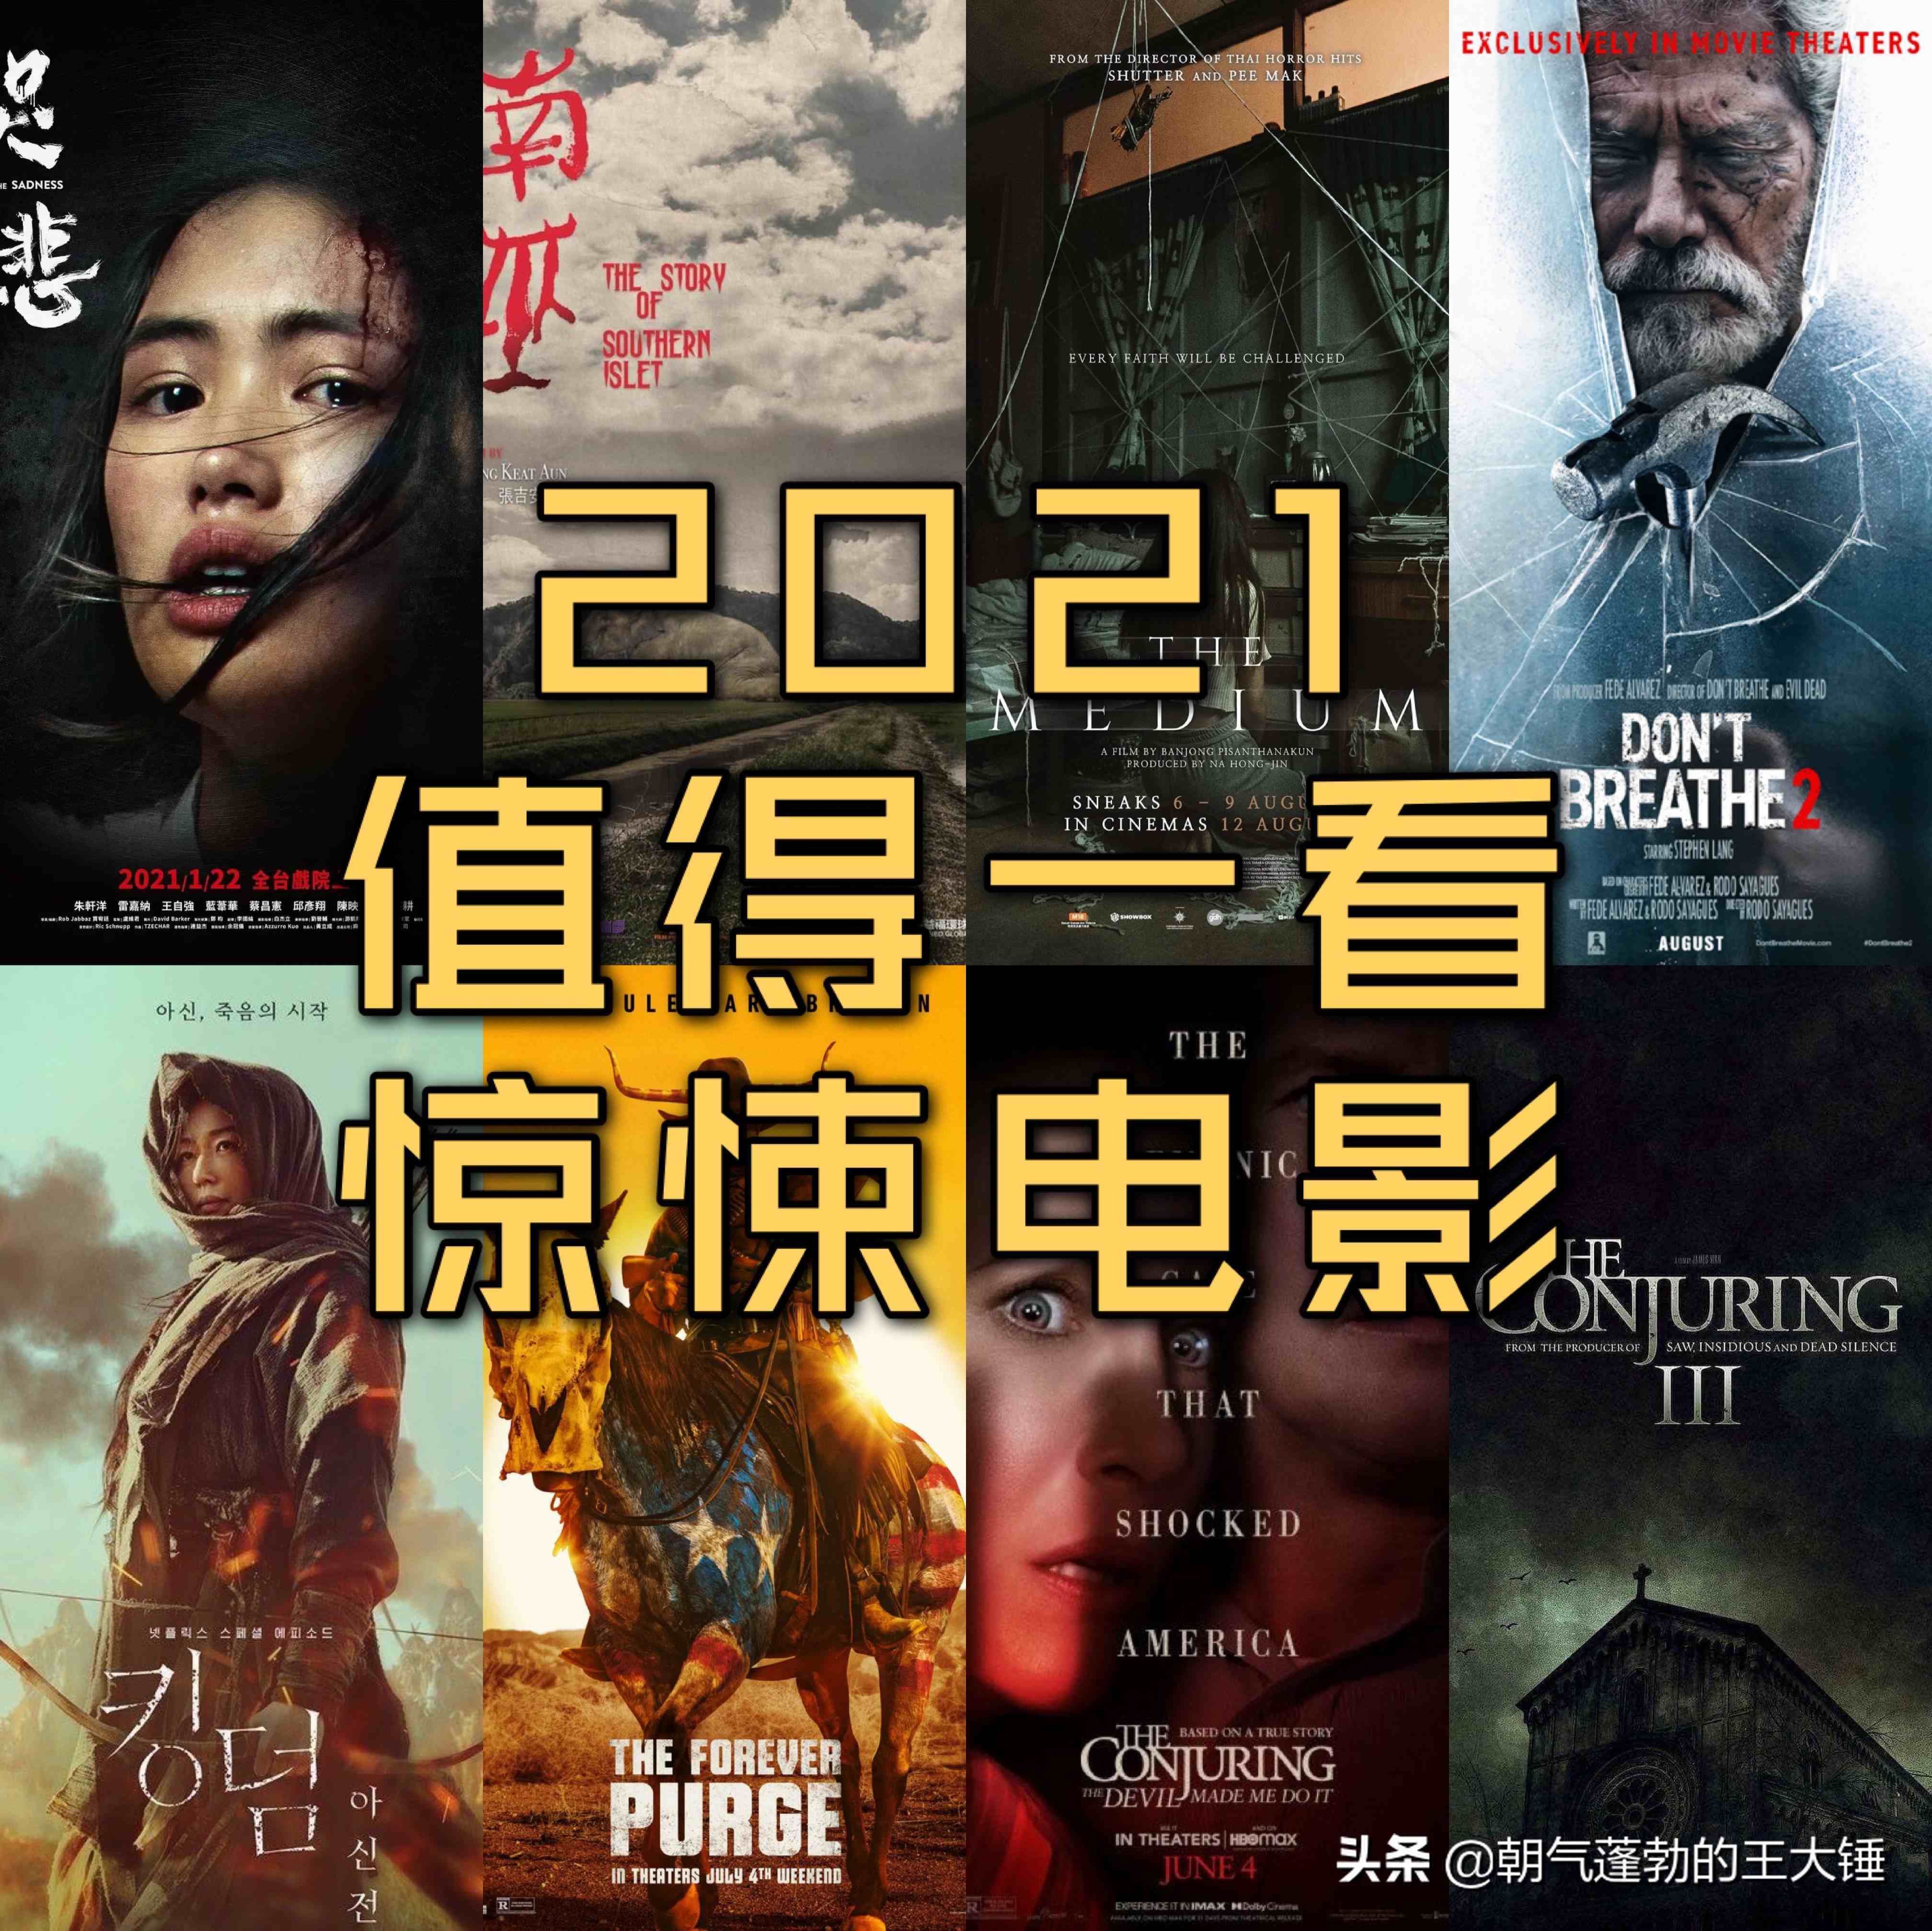 推荐十部2021值得一看的惊悚恐怖电影(已上映篇)点赞收藏哦